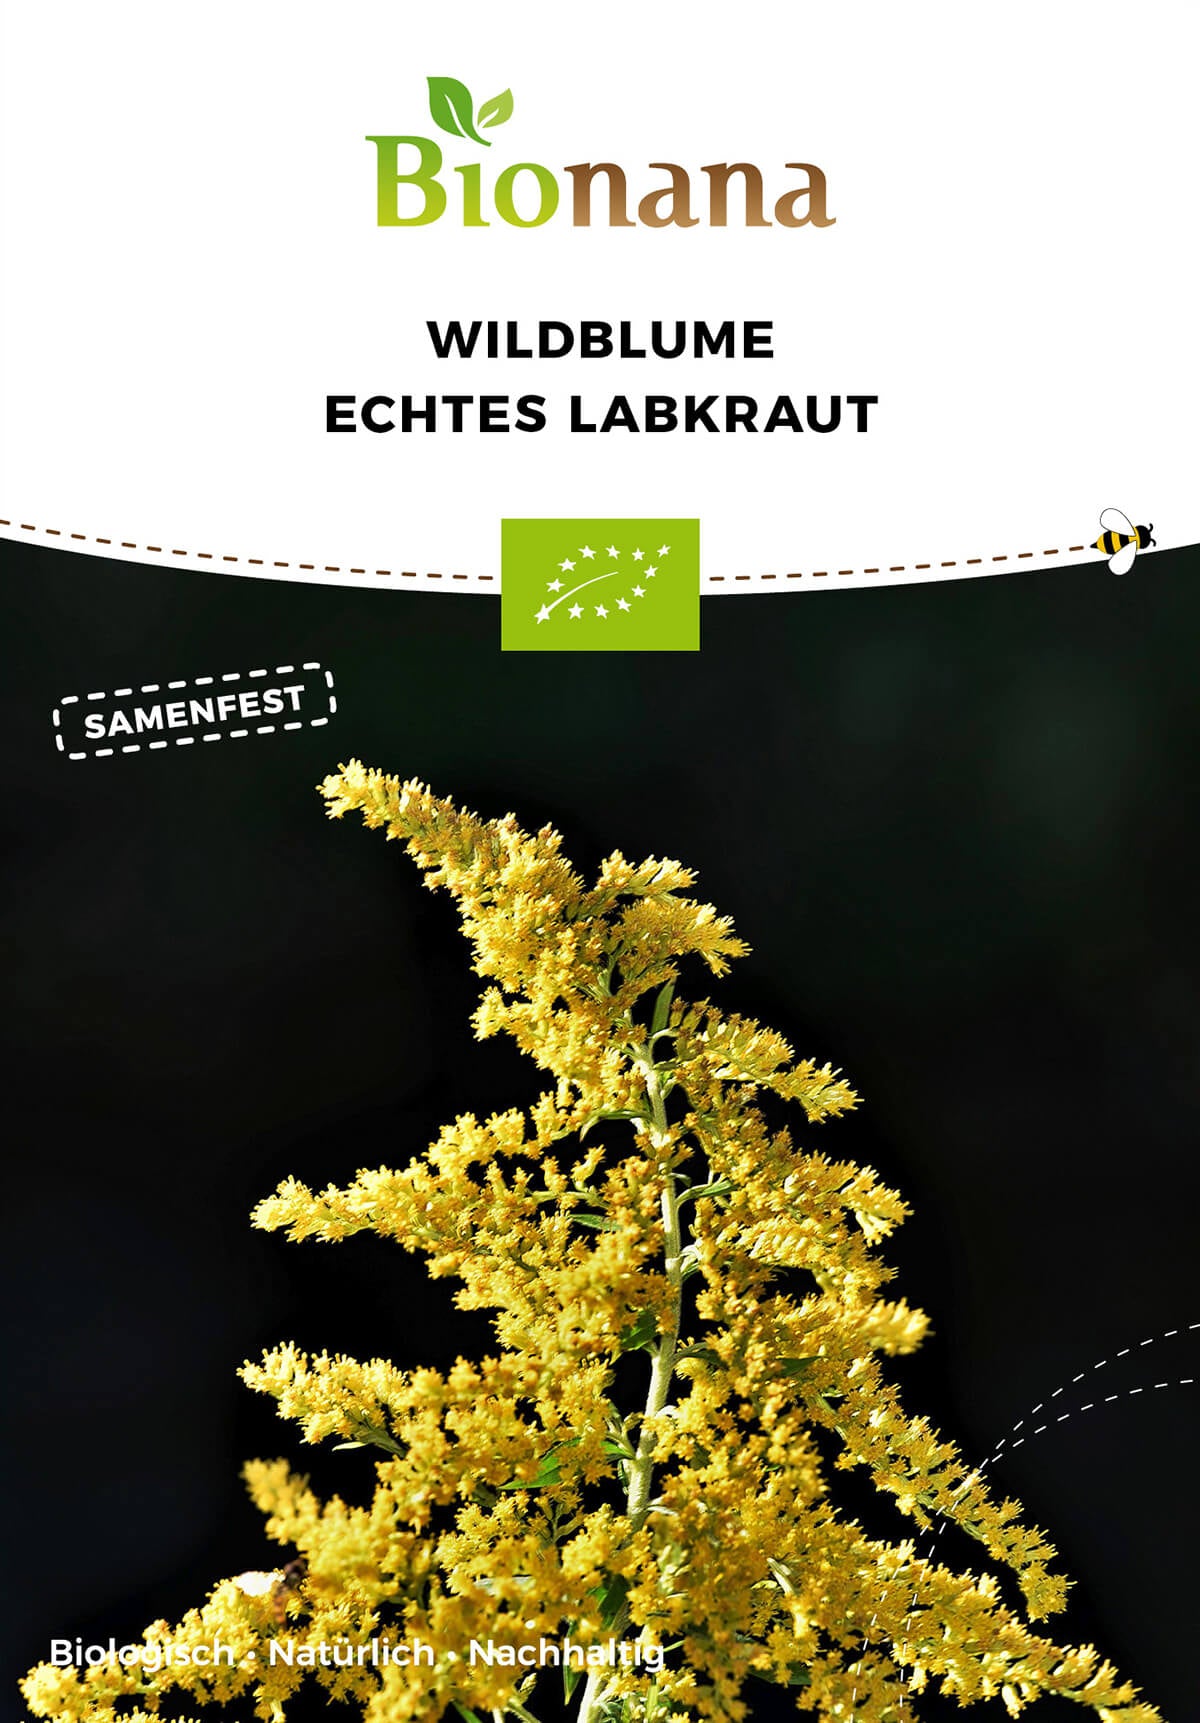 Wildblume Echtes Labkraut | BIO Wildblumensamen von Bionana